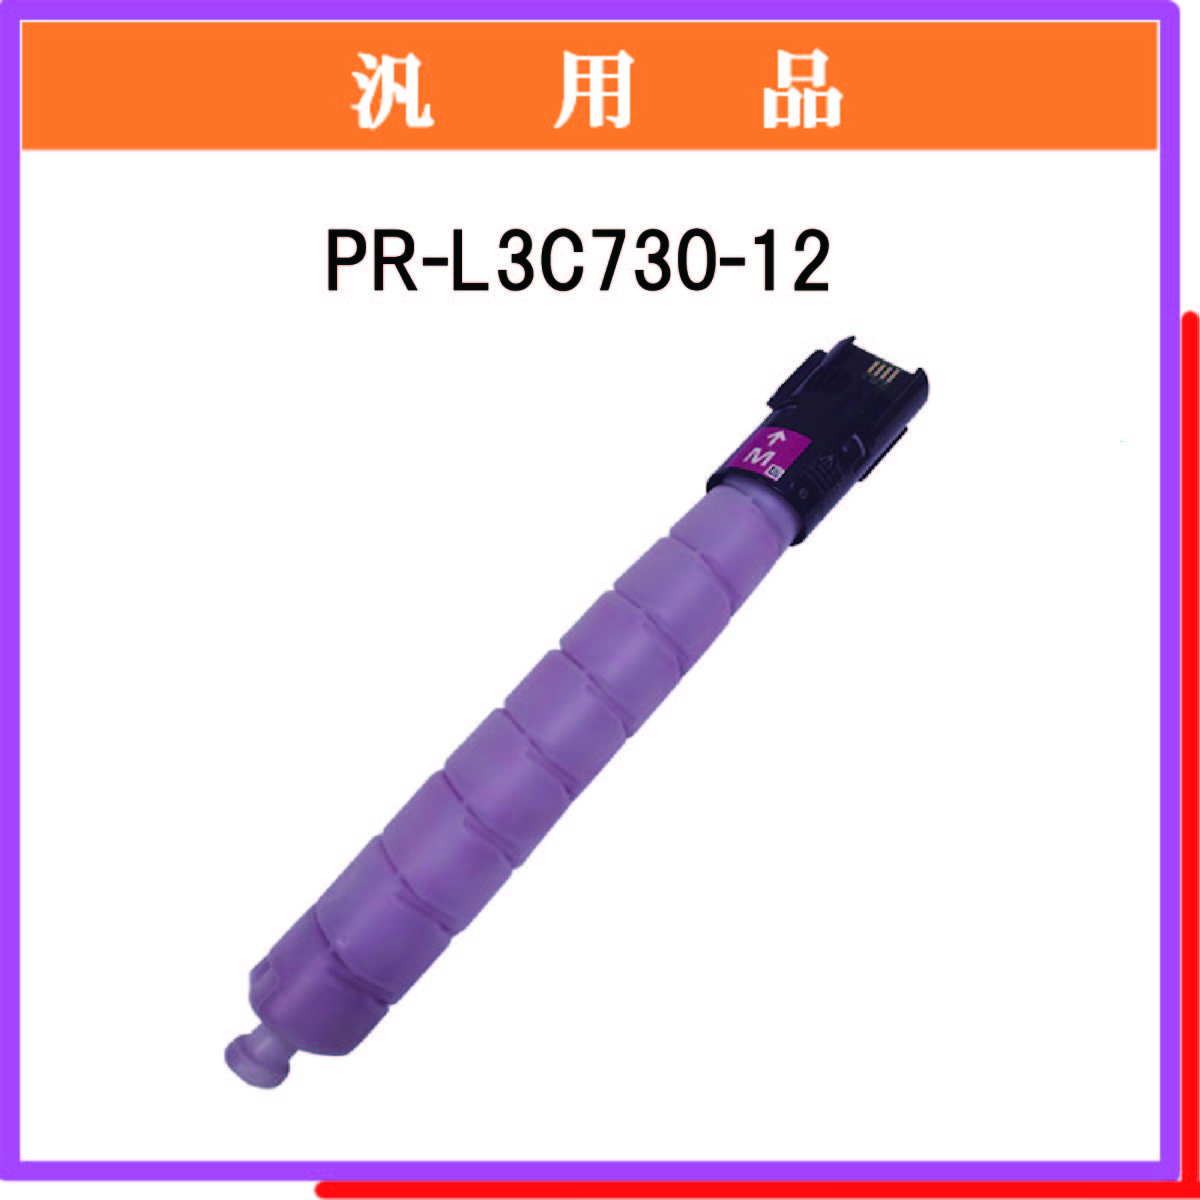 PR-L3C730-12 汎用品